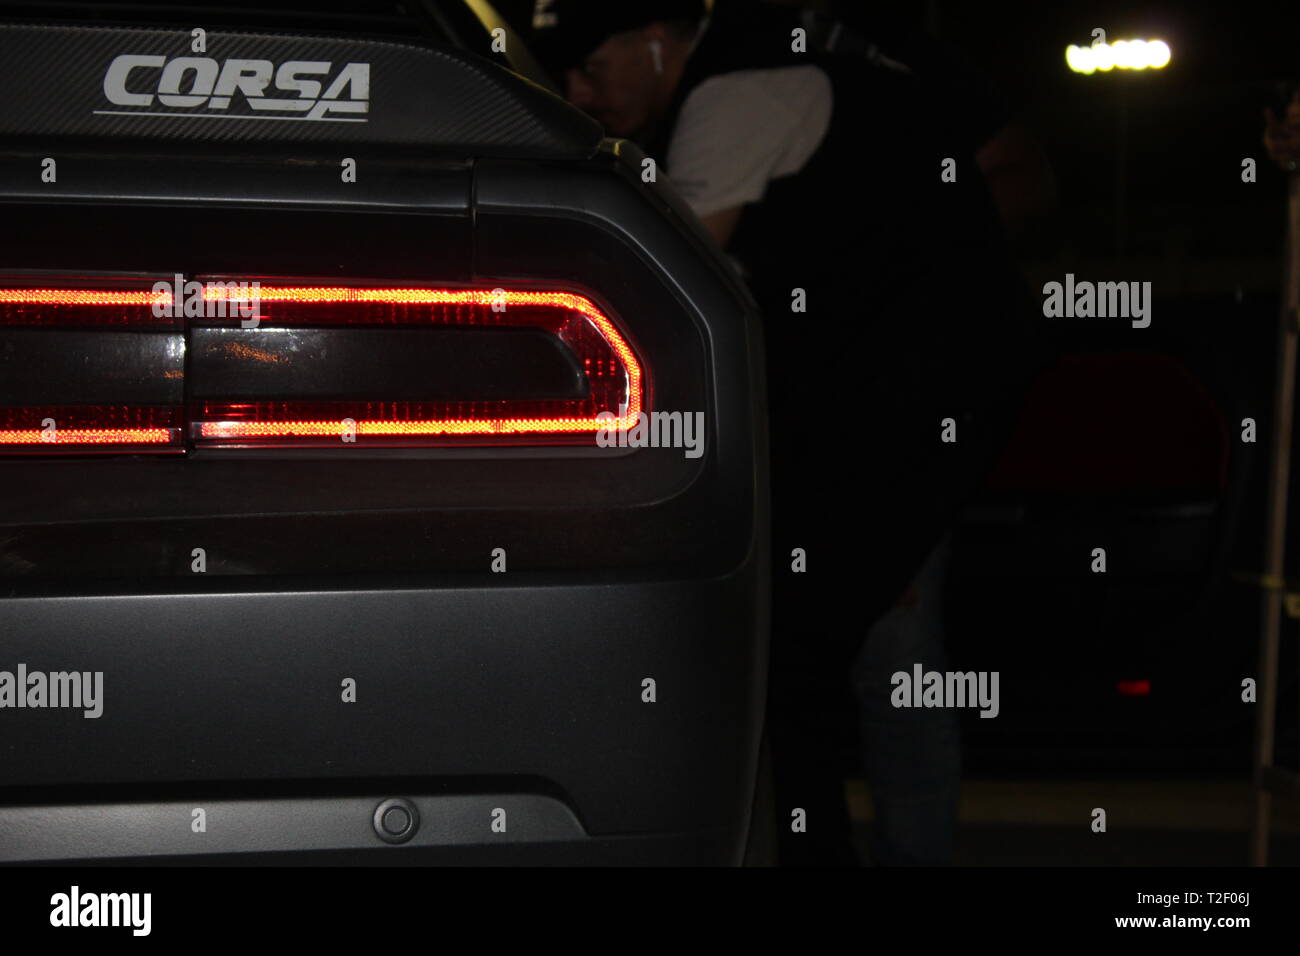 Feux arrière de la voiture Challenger Dodge noire personnalisés avec l'autocollant CORSA Banque D'Images